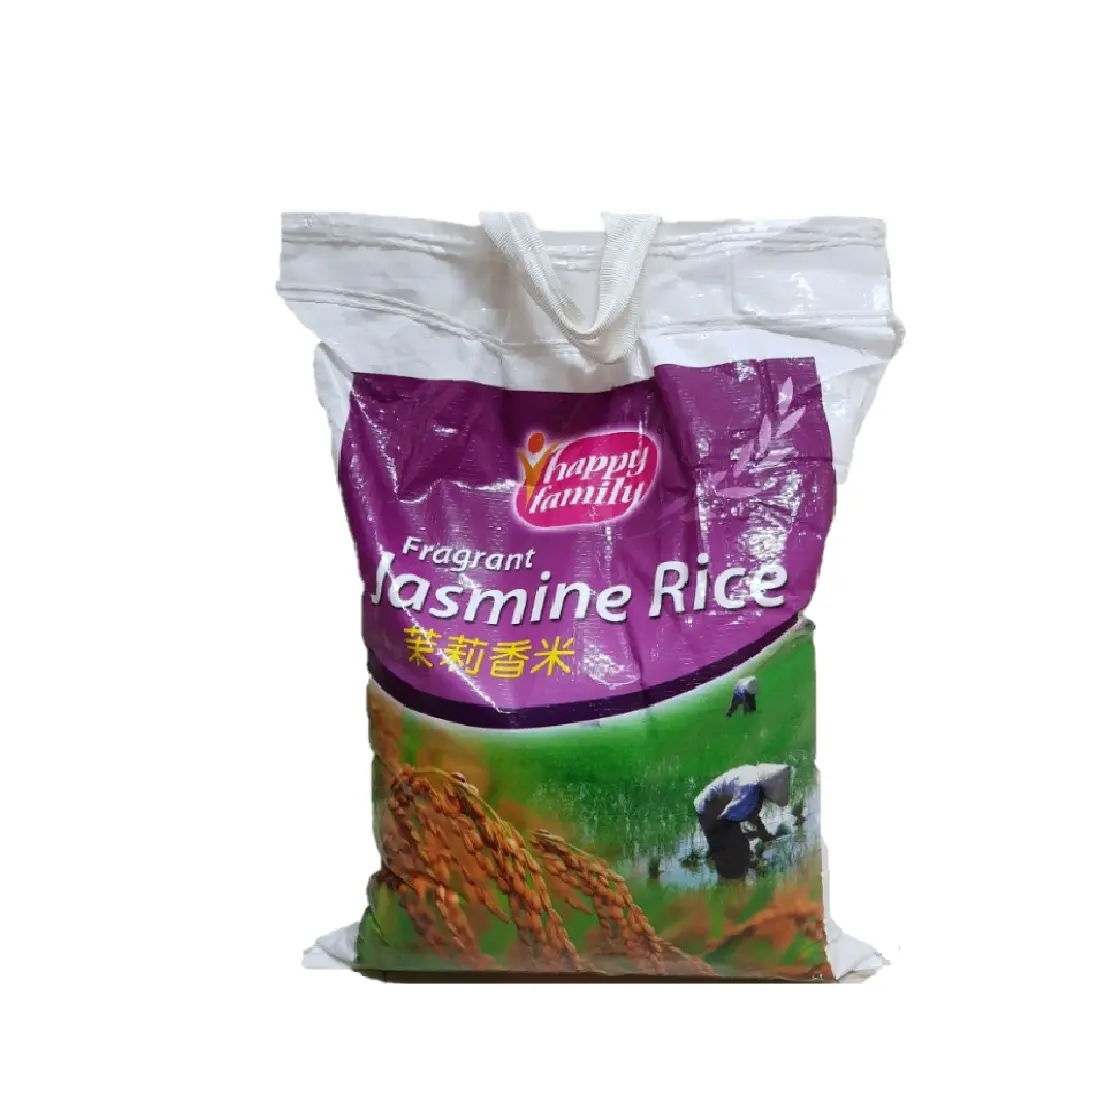 ข้าว Jamine รสชาติอร่อยหอมกลิ่นหอมกลิ่นหอมที่มีสีขาวจากเวียดนาม-ริซ-arroz-WhatsApp ลินดา0084 989 607 322